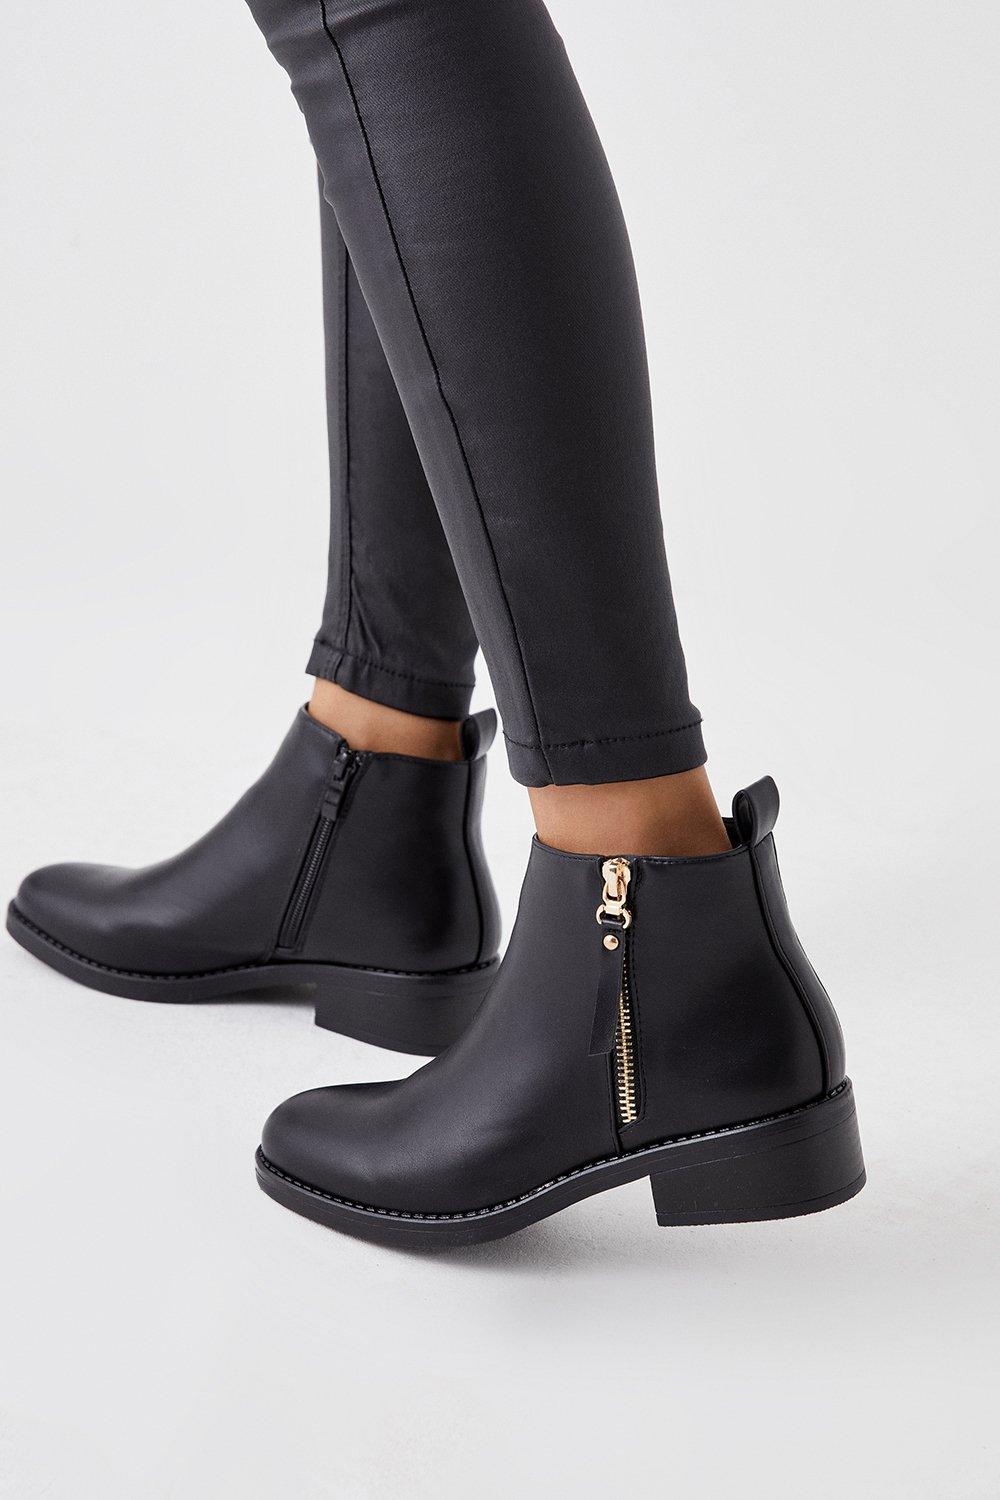 Women's Myla Zip Ankle Boots - black - 3